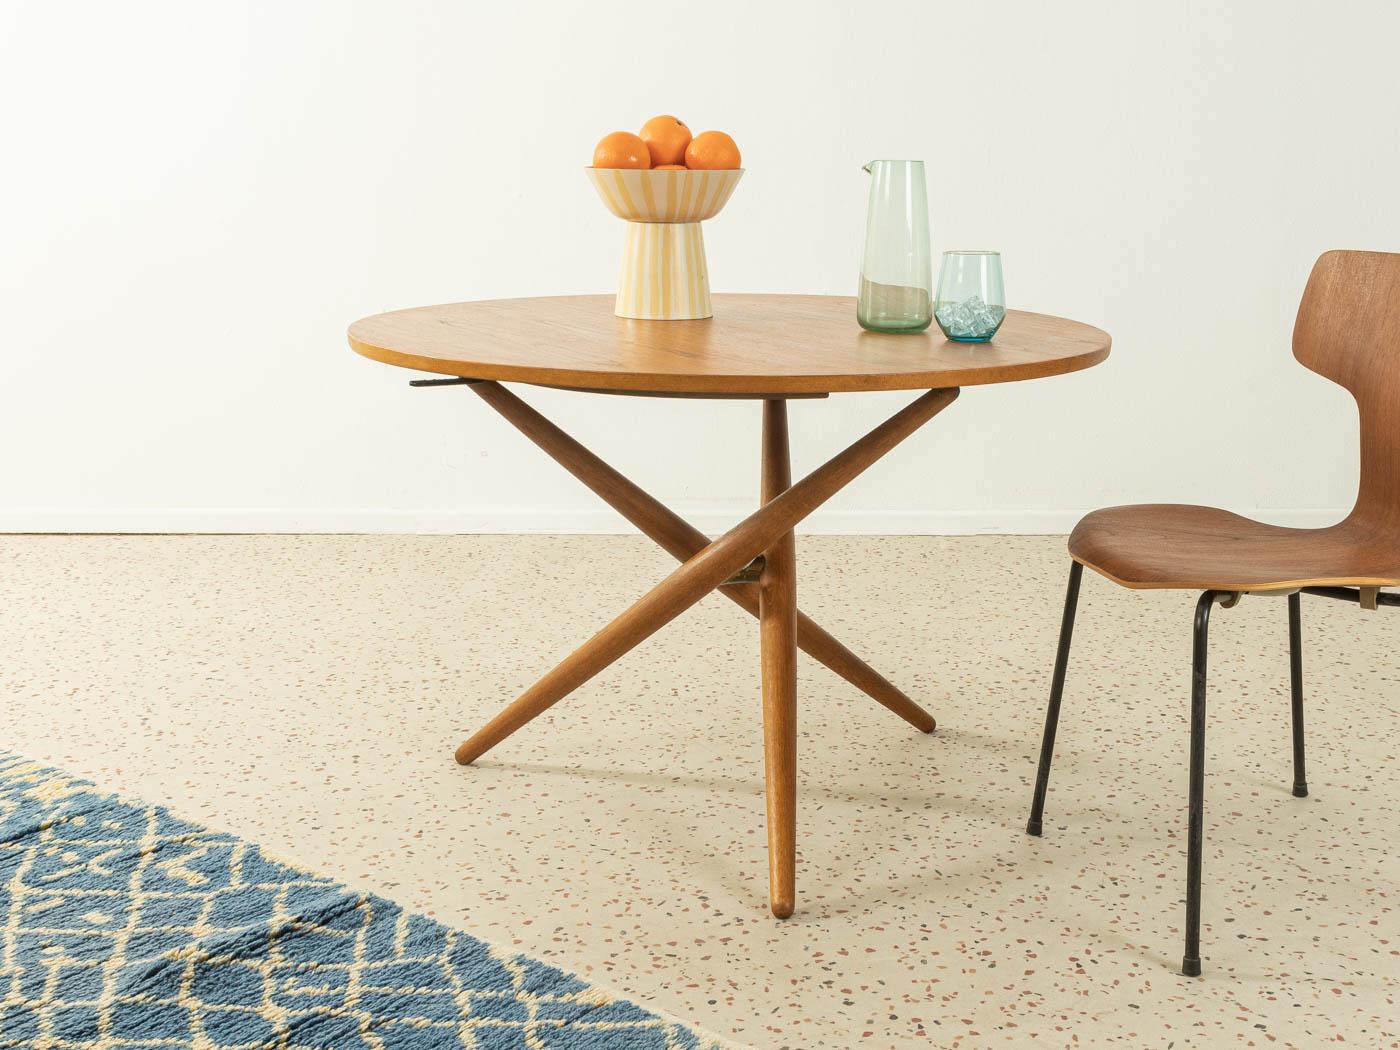 Mid-Century Modern Dining Table Coffee Table 1950s Jürg Bally Switzerland height-adjustable oak 